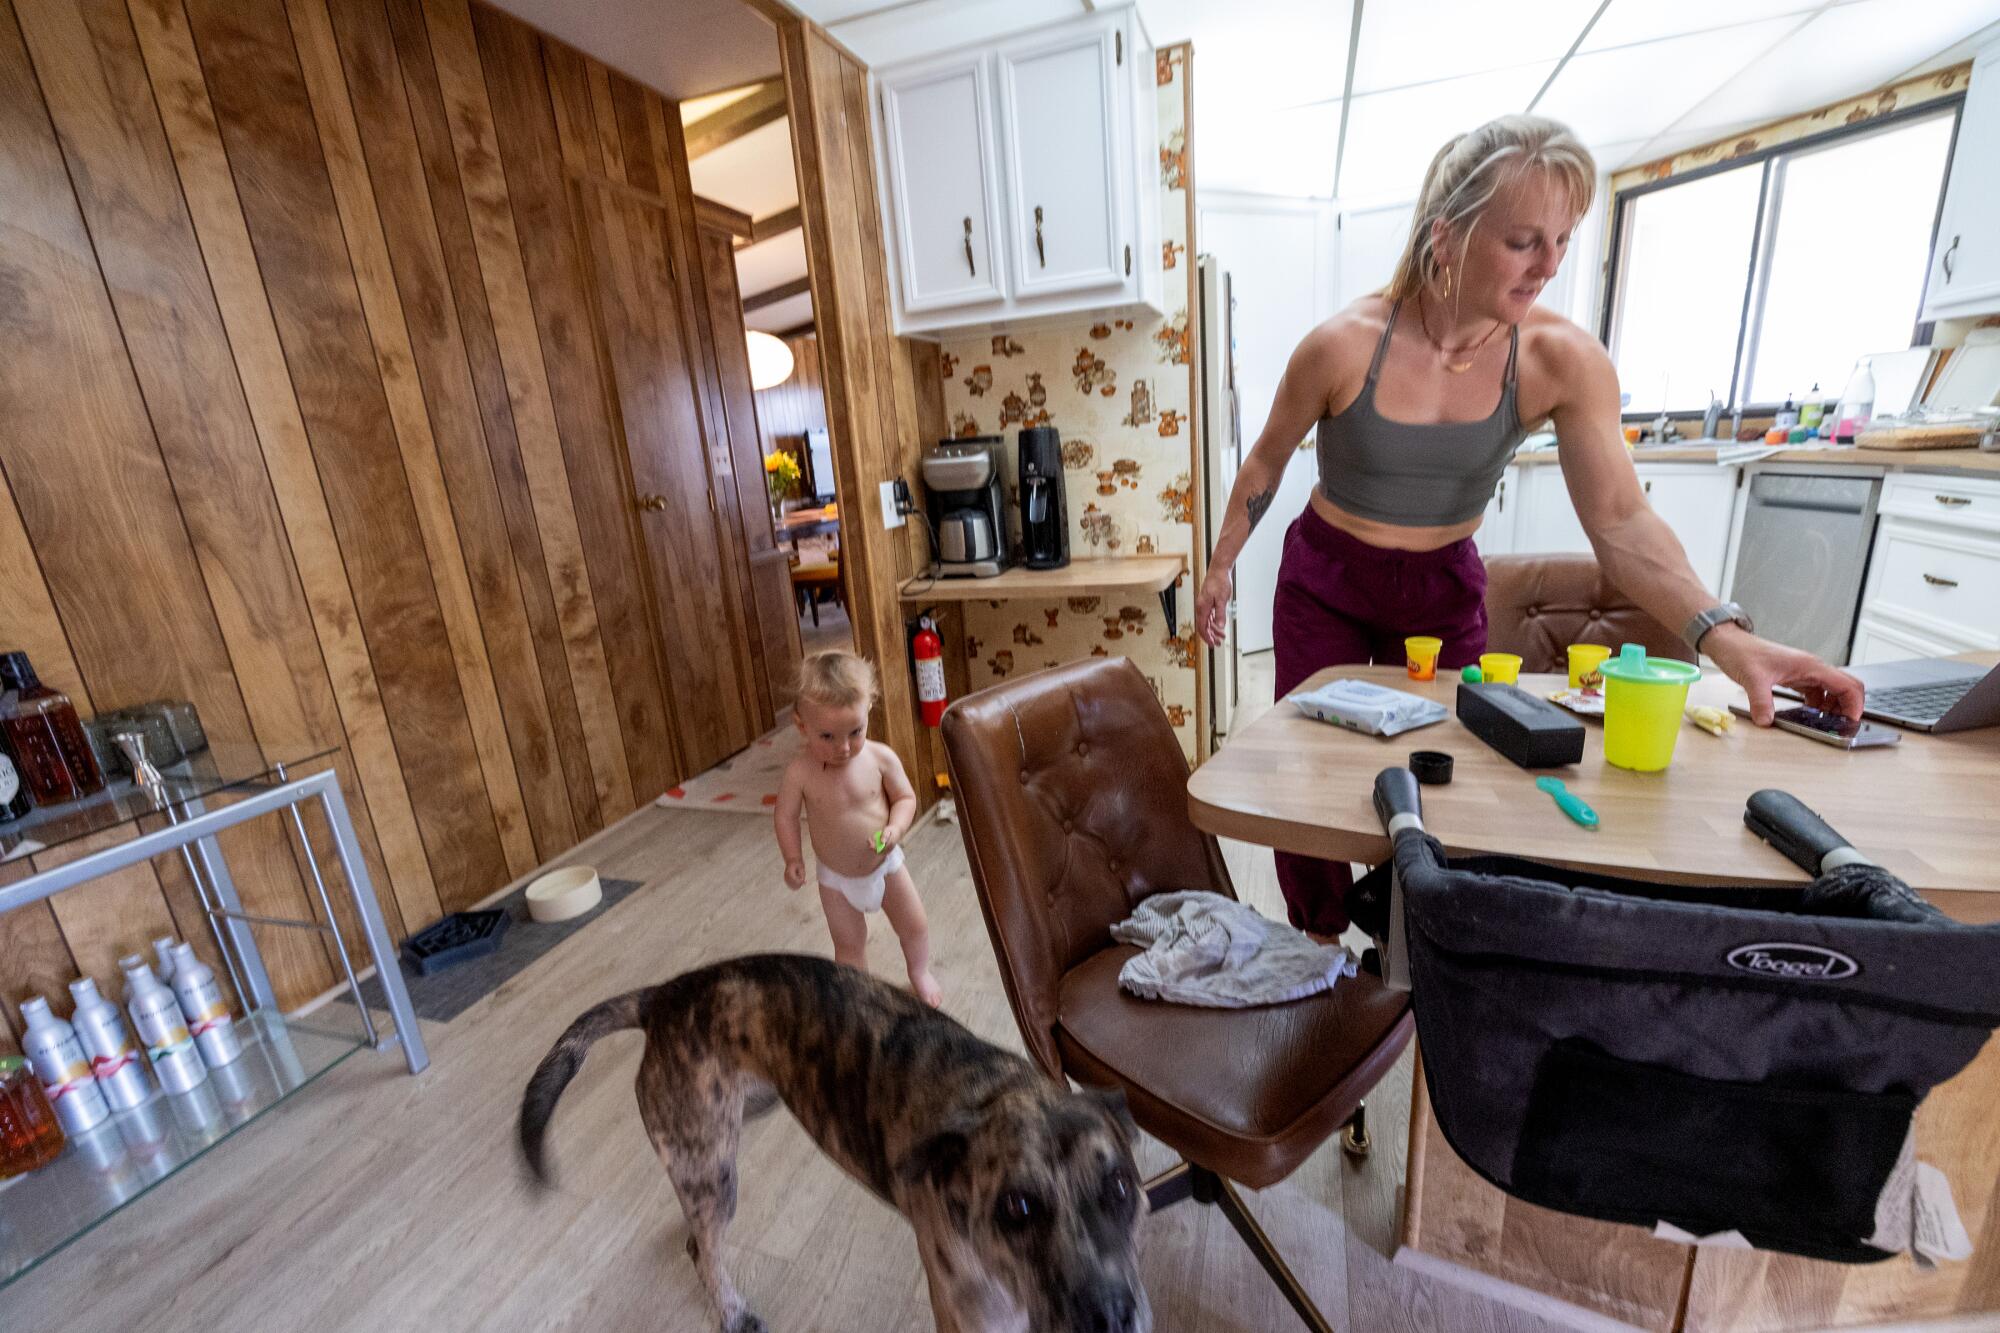 Una mujer atlética en una cocina revisa su teléfono con su niño pequeño, en pañales, cerca.  